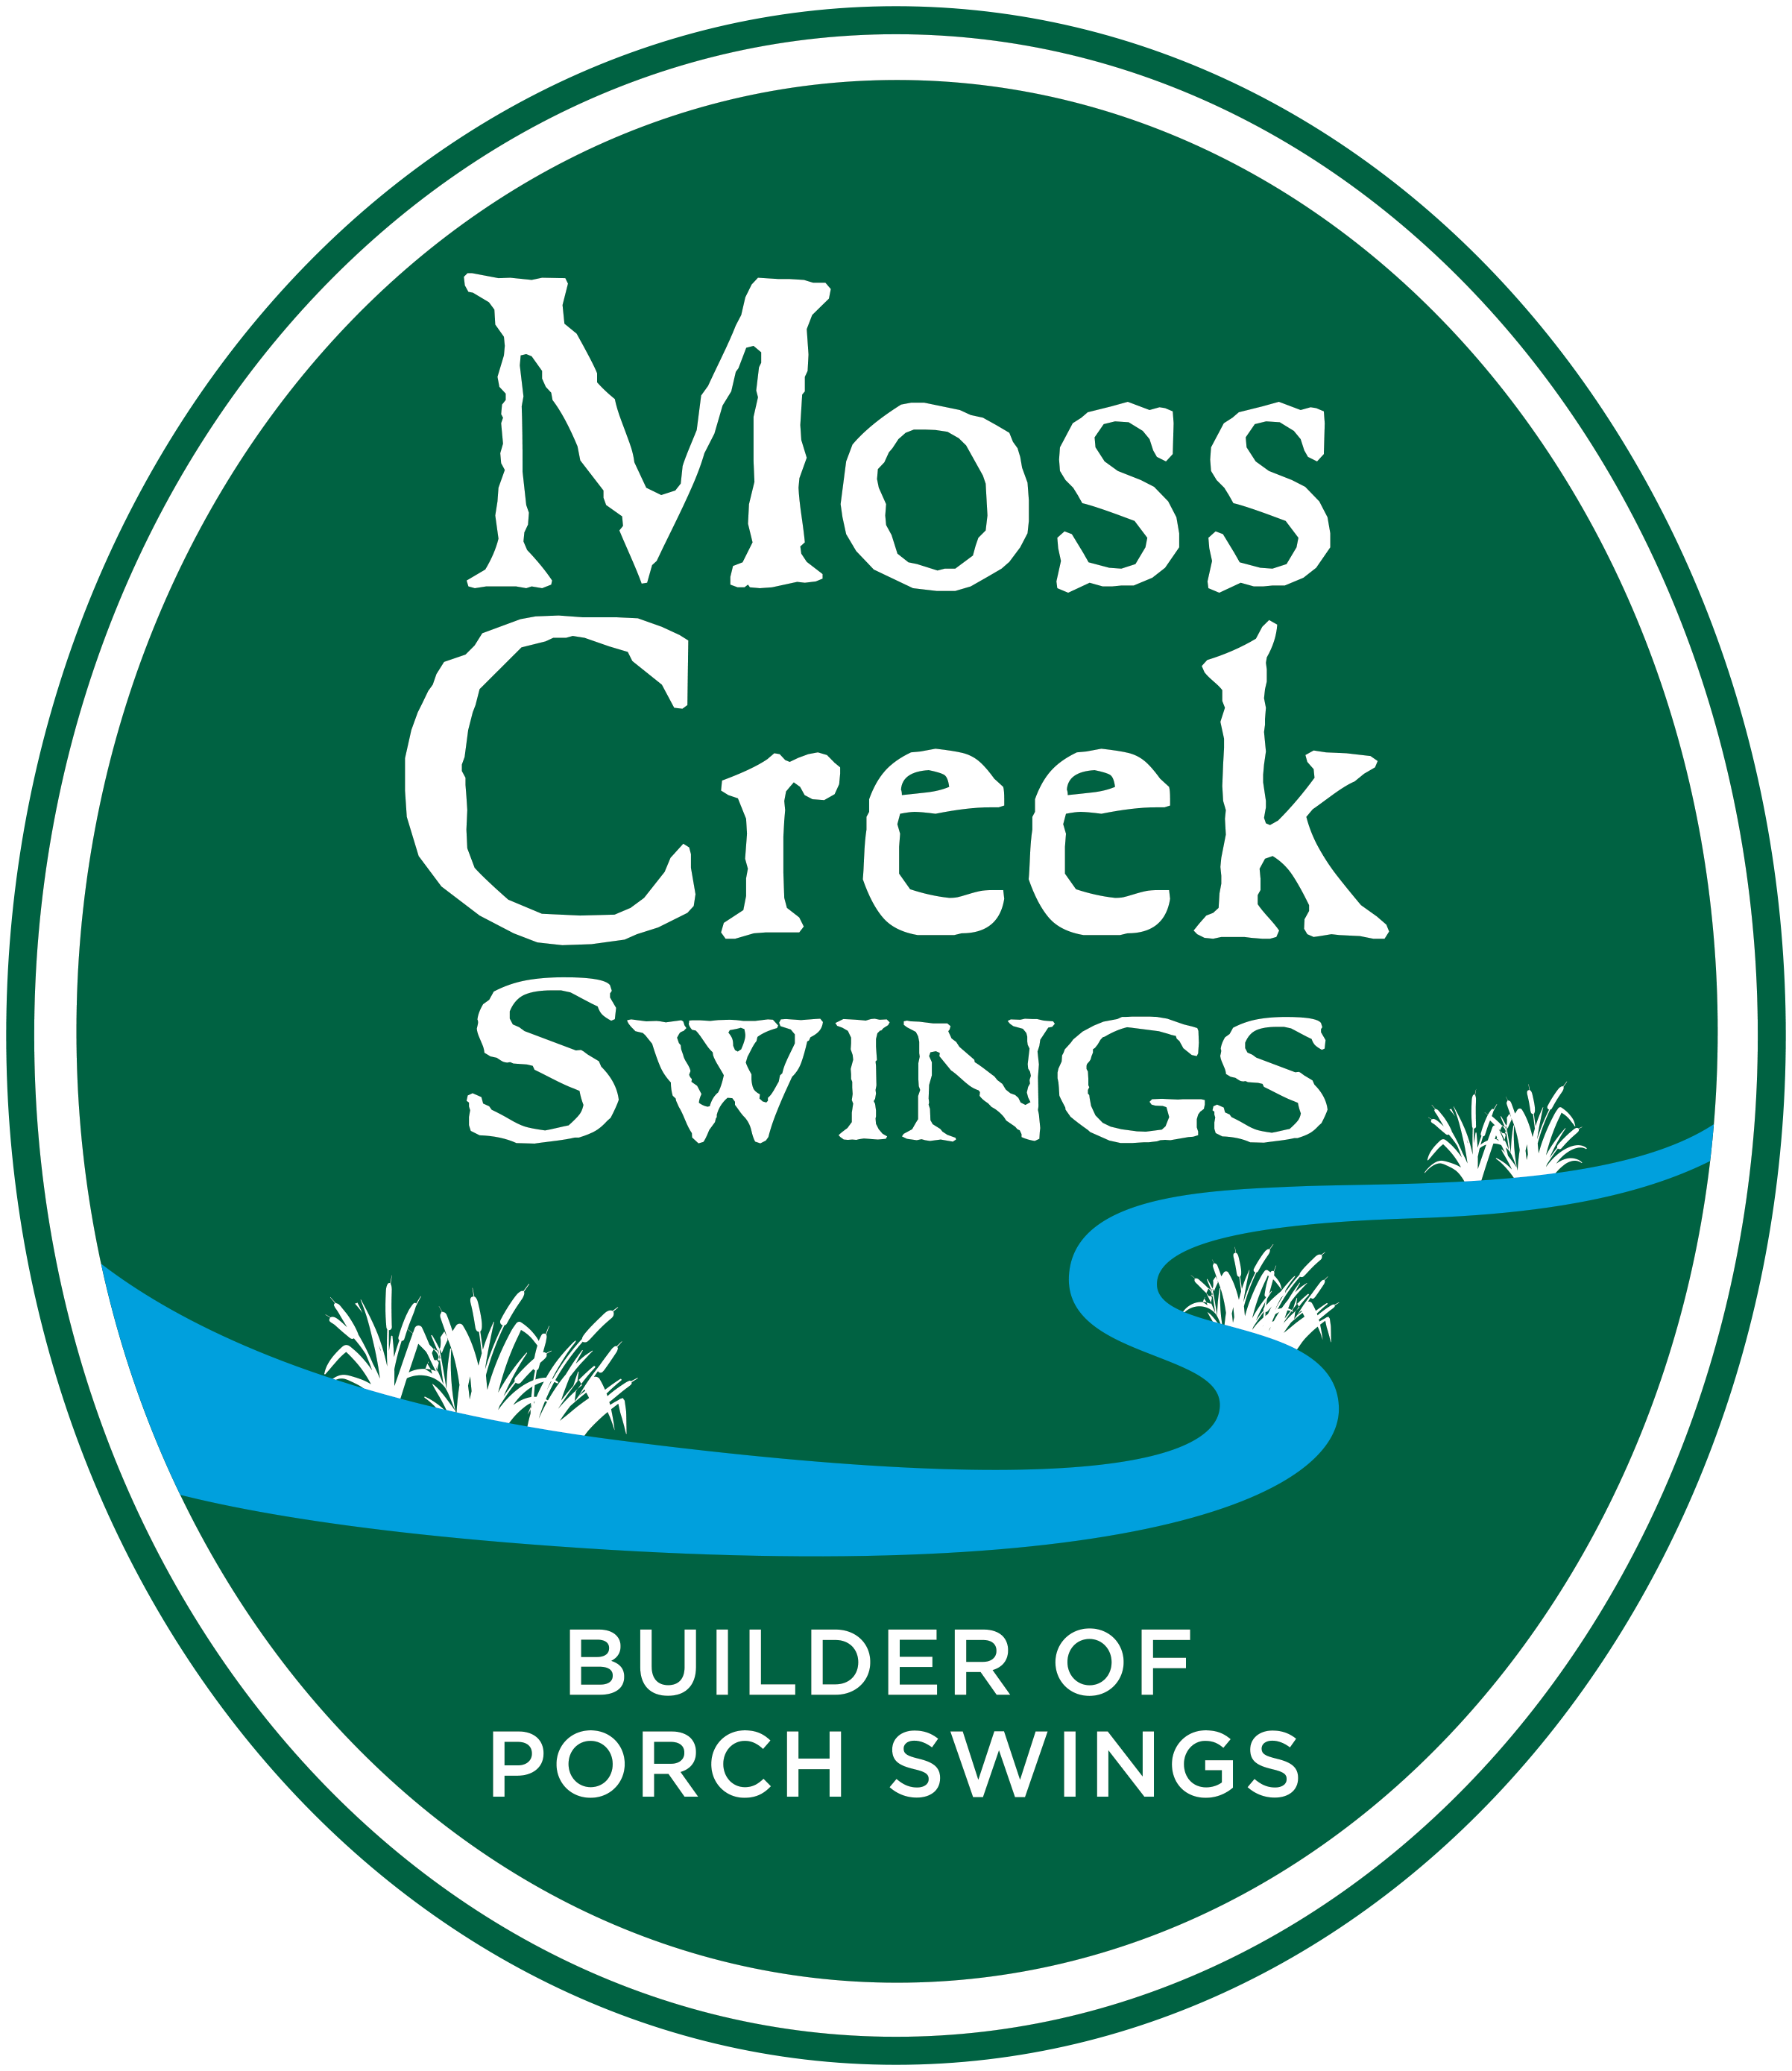 Moss Creek Swings